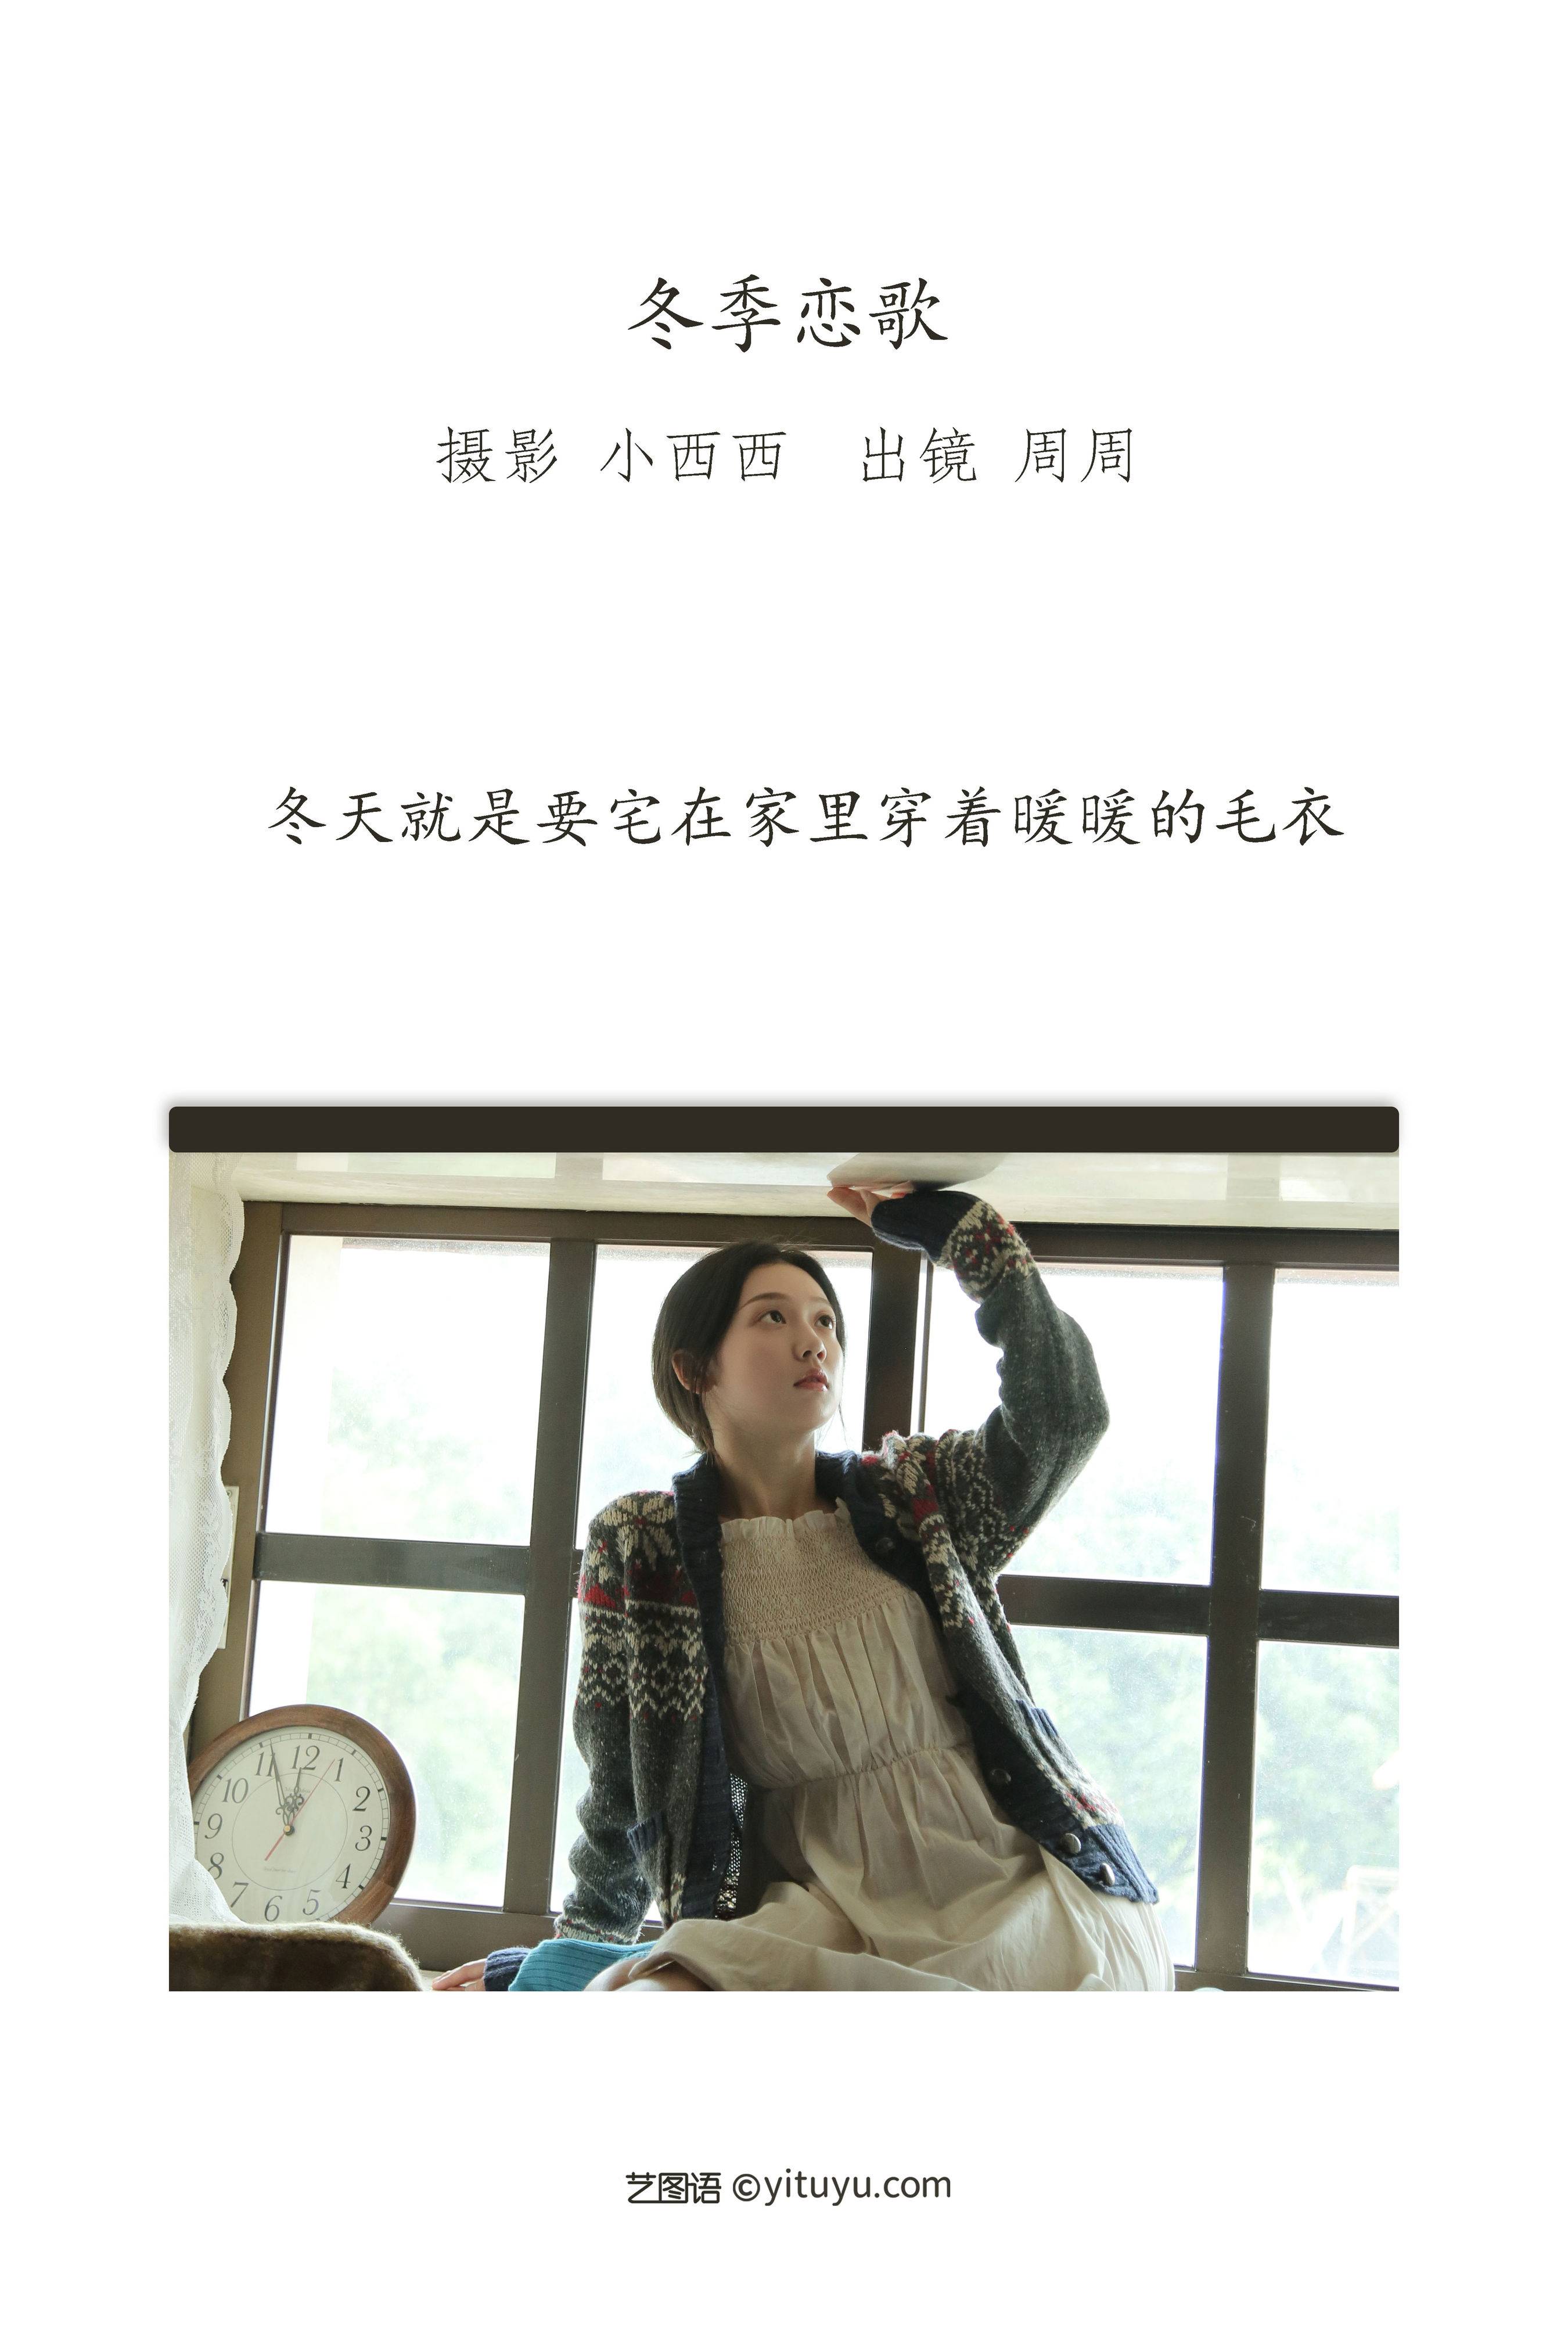 冬季恋歌 日系 写真集 女生 胶片&YiTuYu艺图语-2